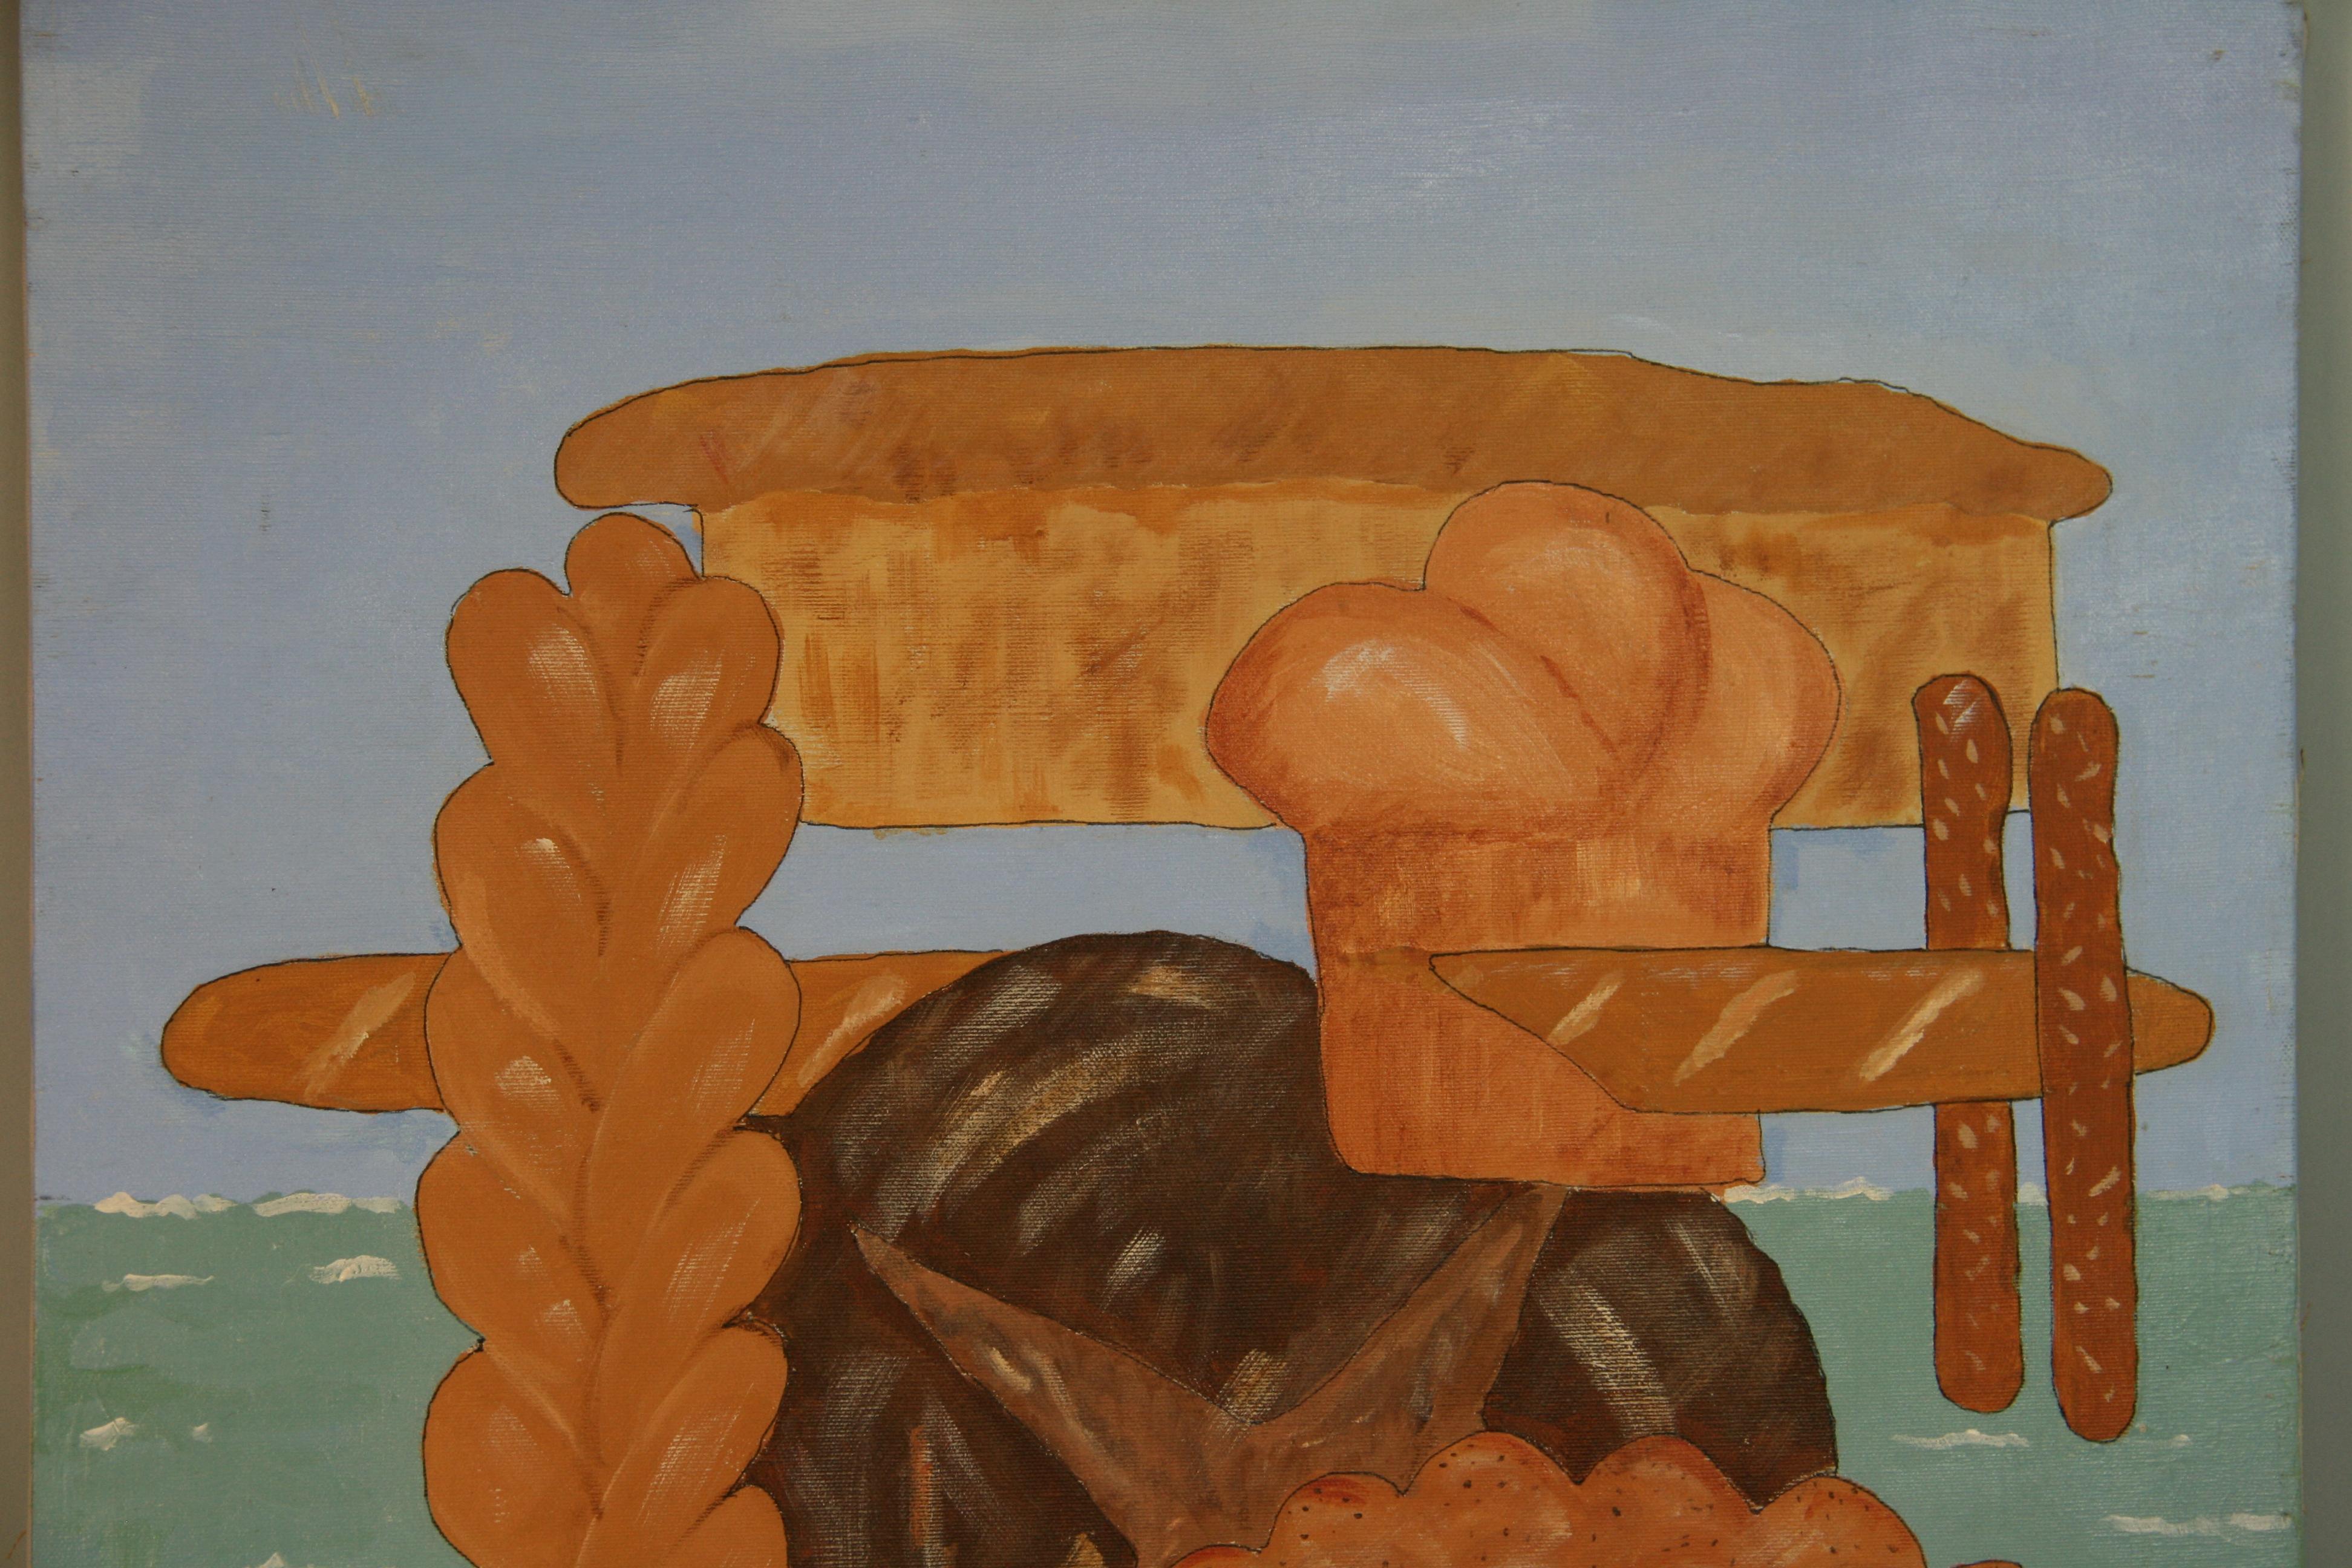 5013 Vintage American Surreal bread upon the waters (pain sur l'eau)
techniques mixtes sur toile tendue
Non encadré
Signé au verso N. Leavitt 1996